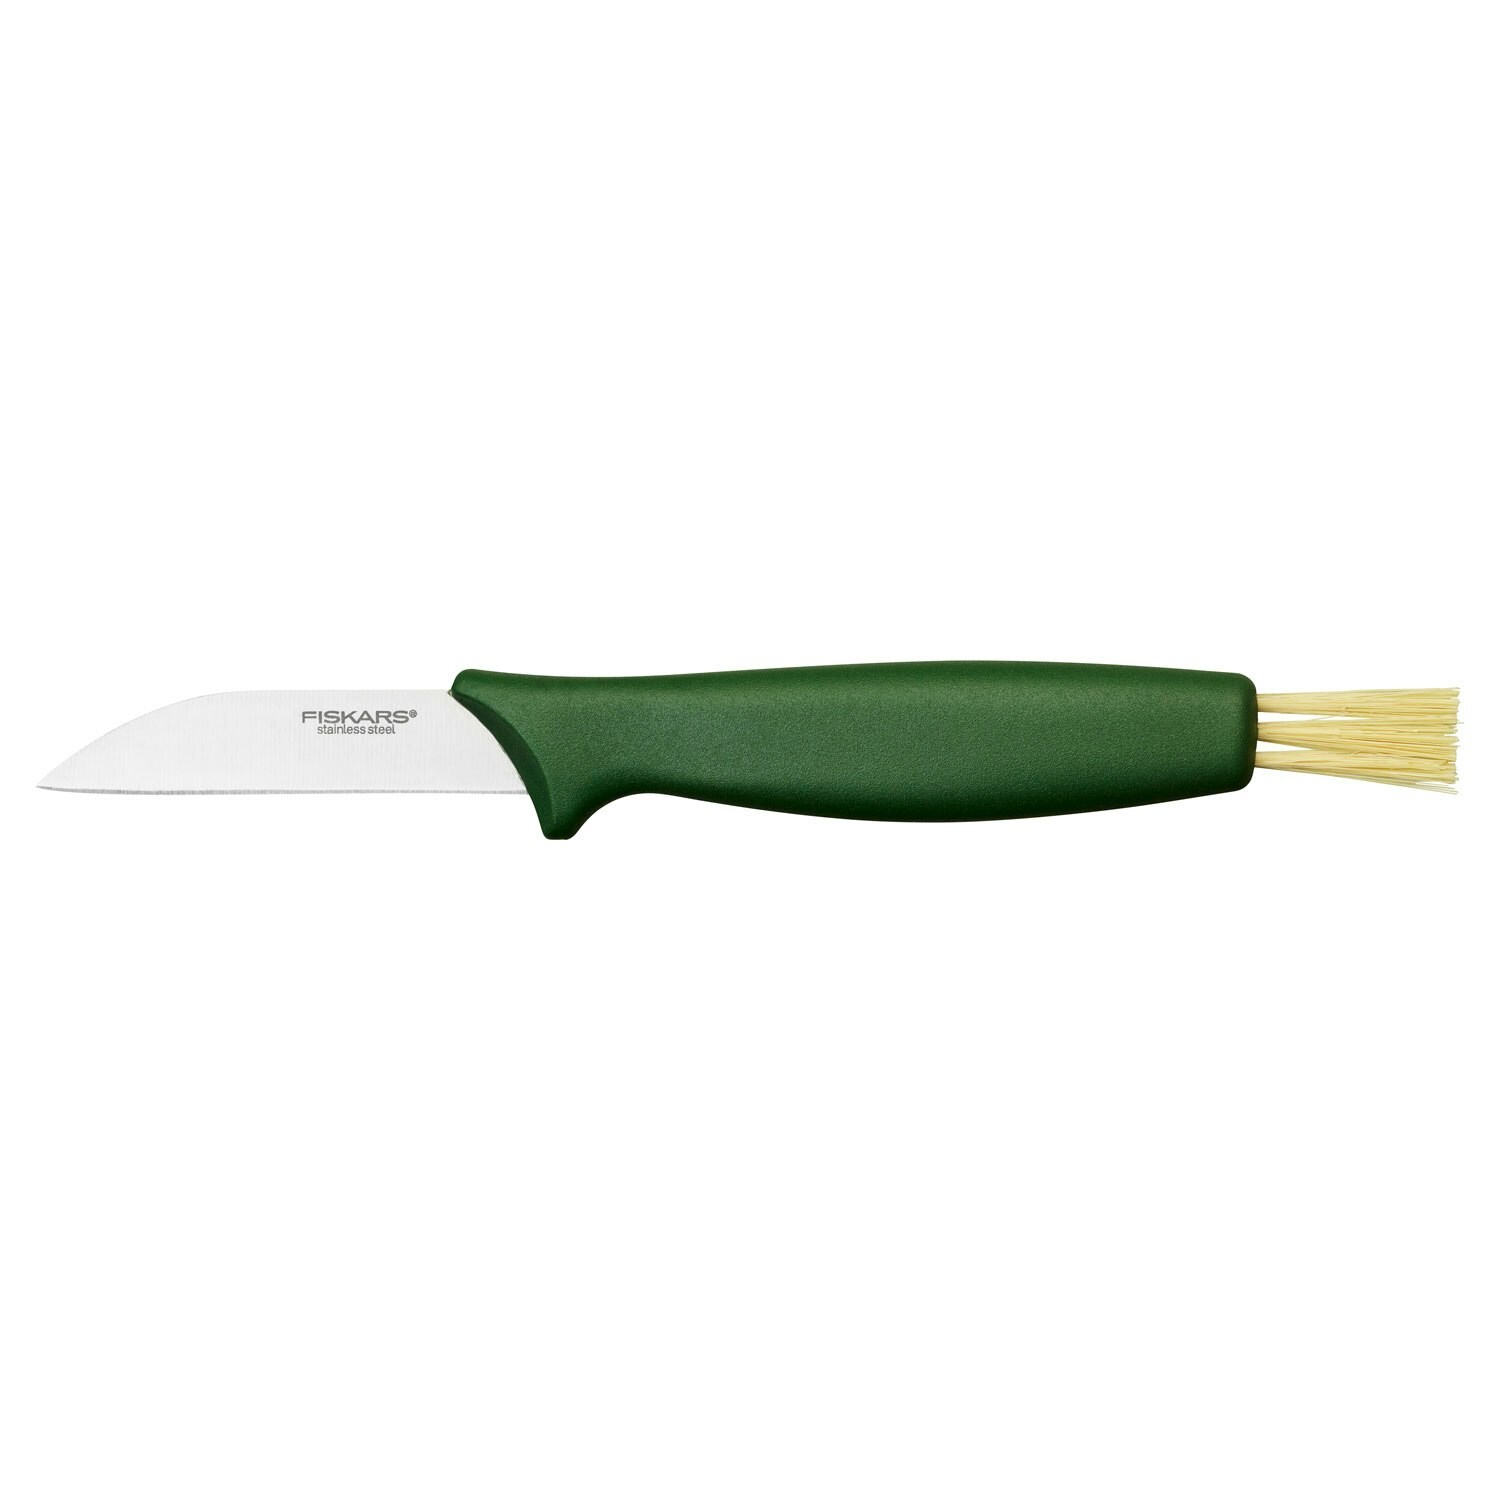 https://royaldesign.com/image/2/fiskars-solid-mushroom-knife-21-cm-0